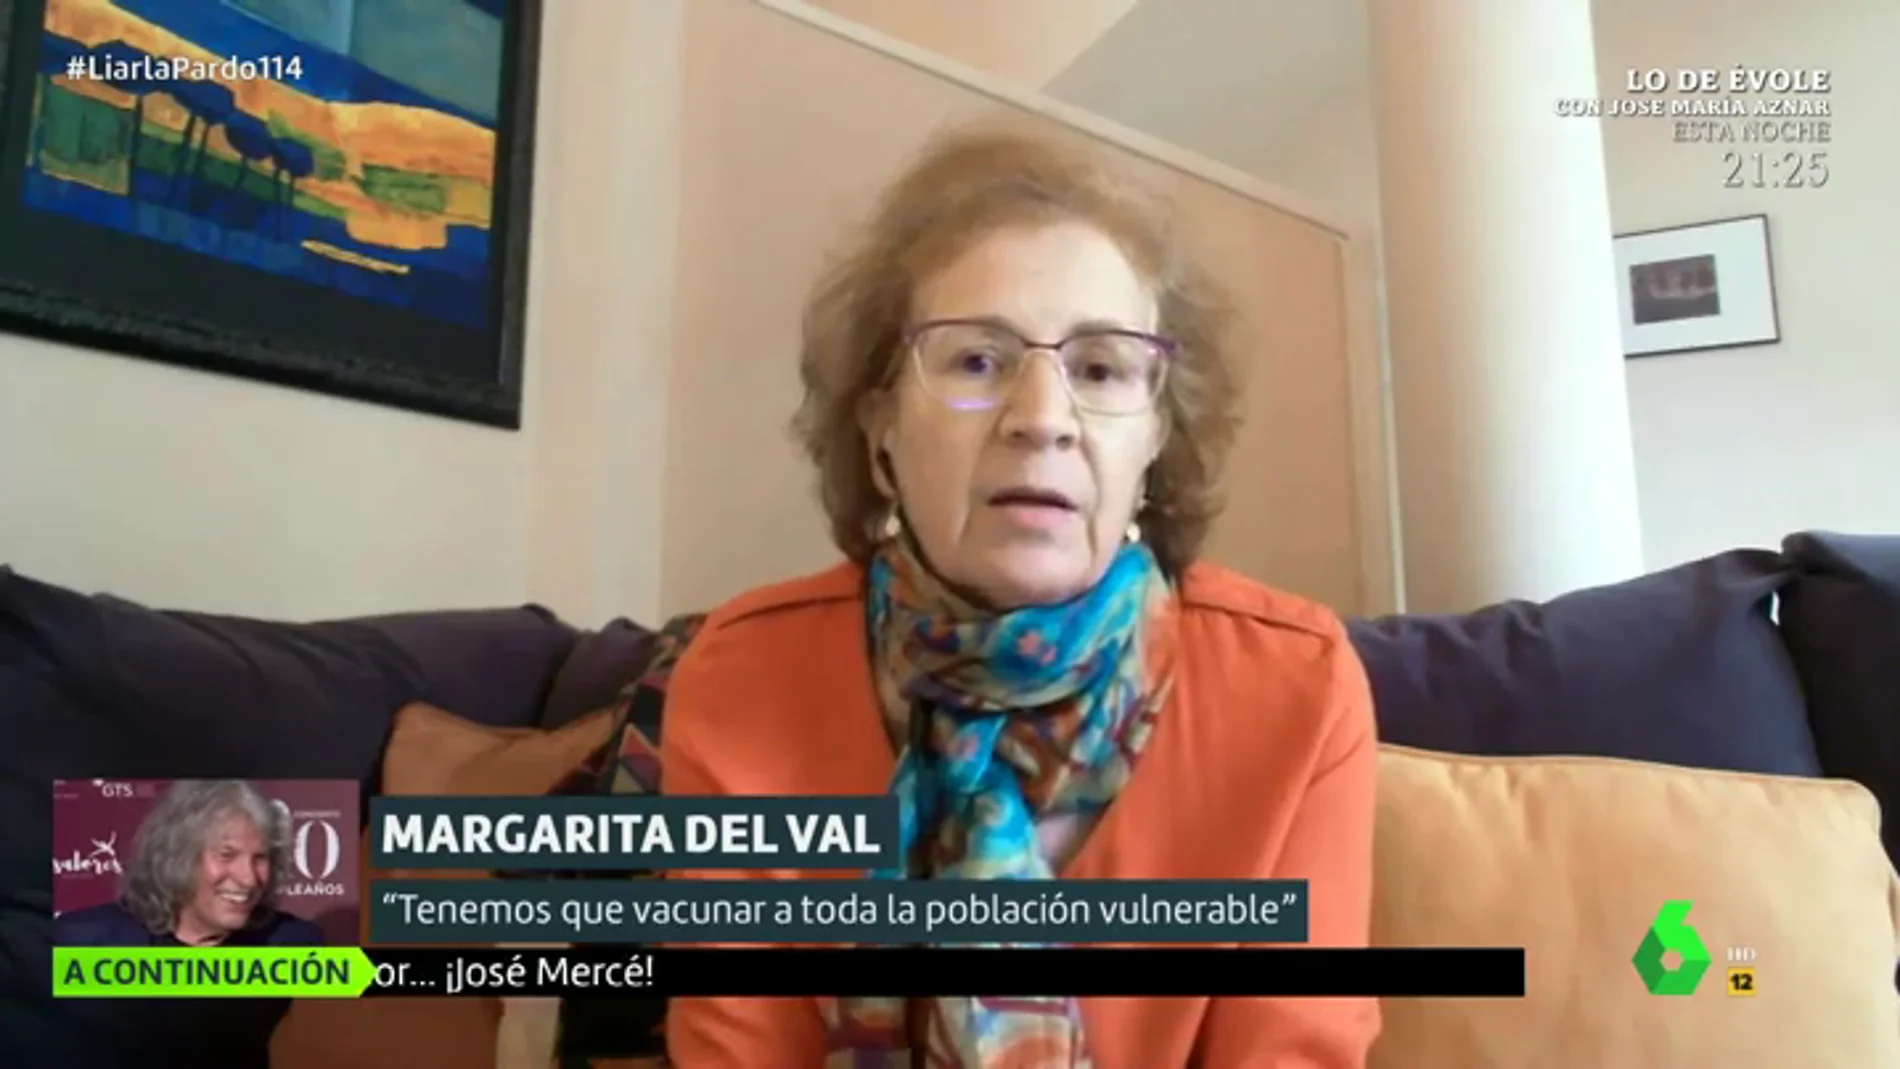 Margarita del Val alerta sobre el peligro de confiarse al estar vacunado: "Aunque son asintomáticos se infectan y pueden contagiar"